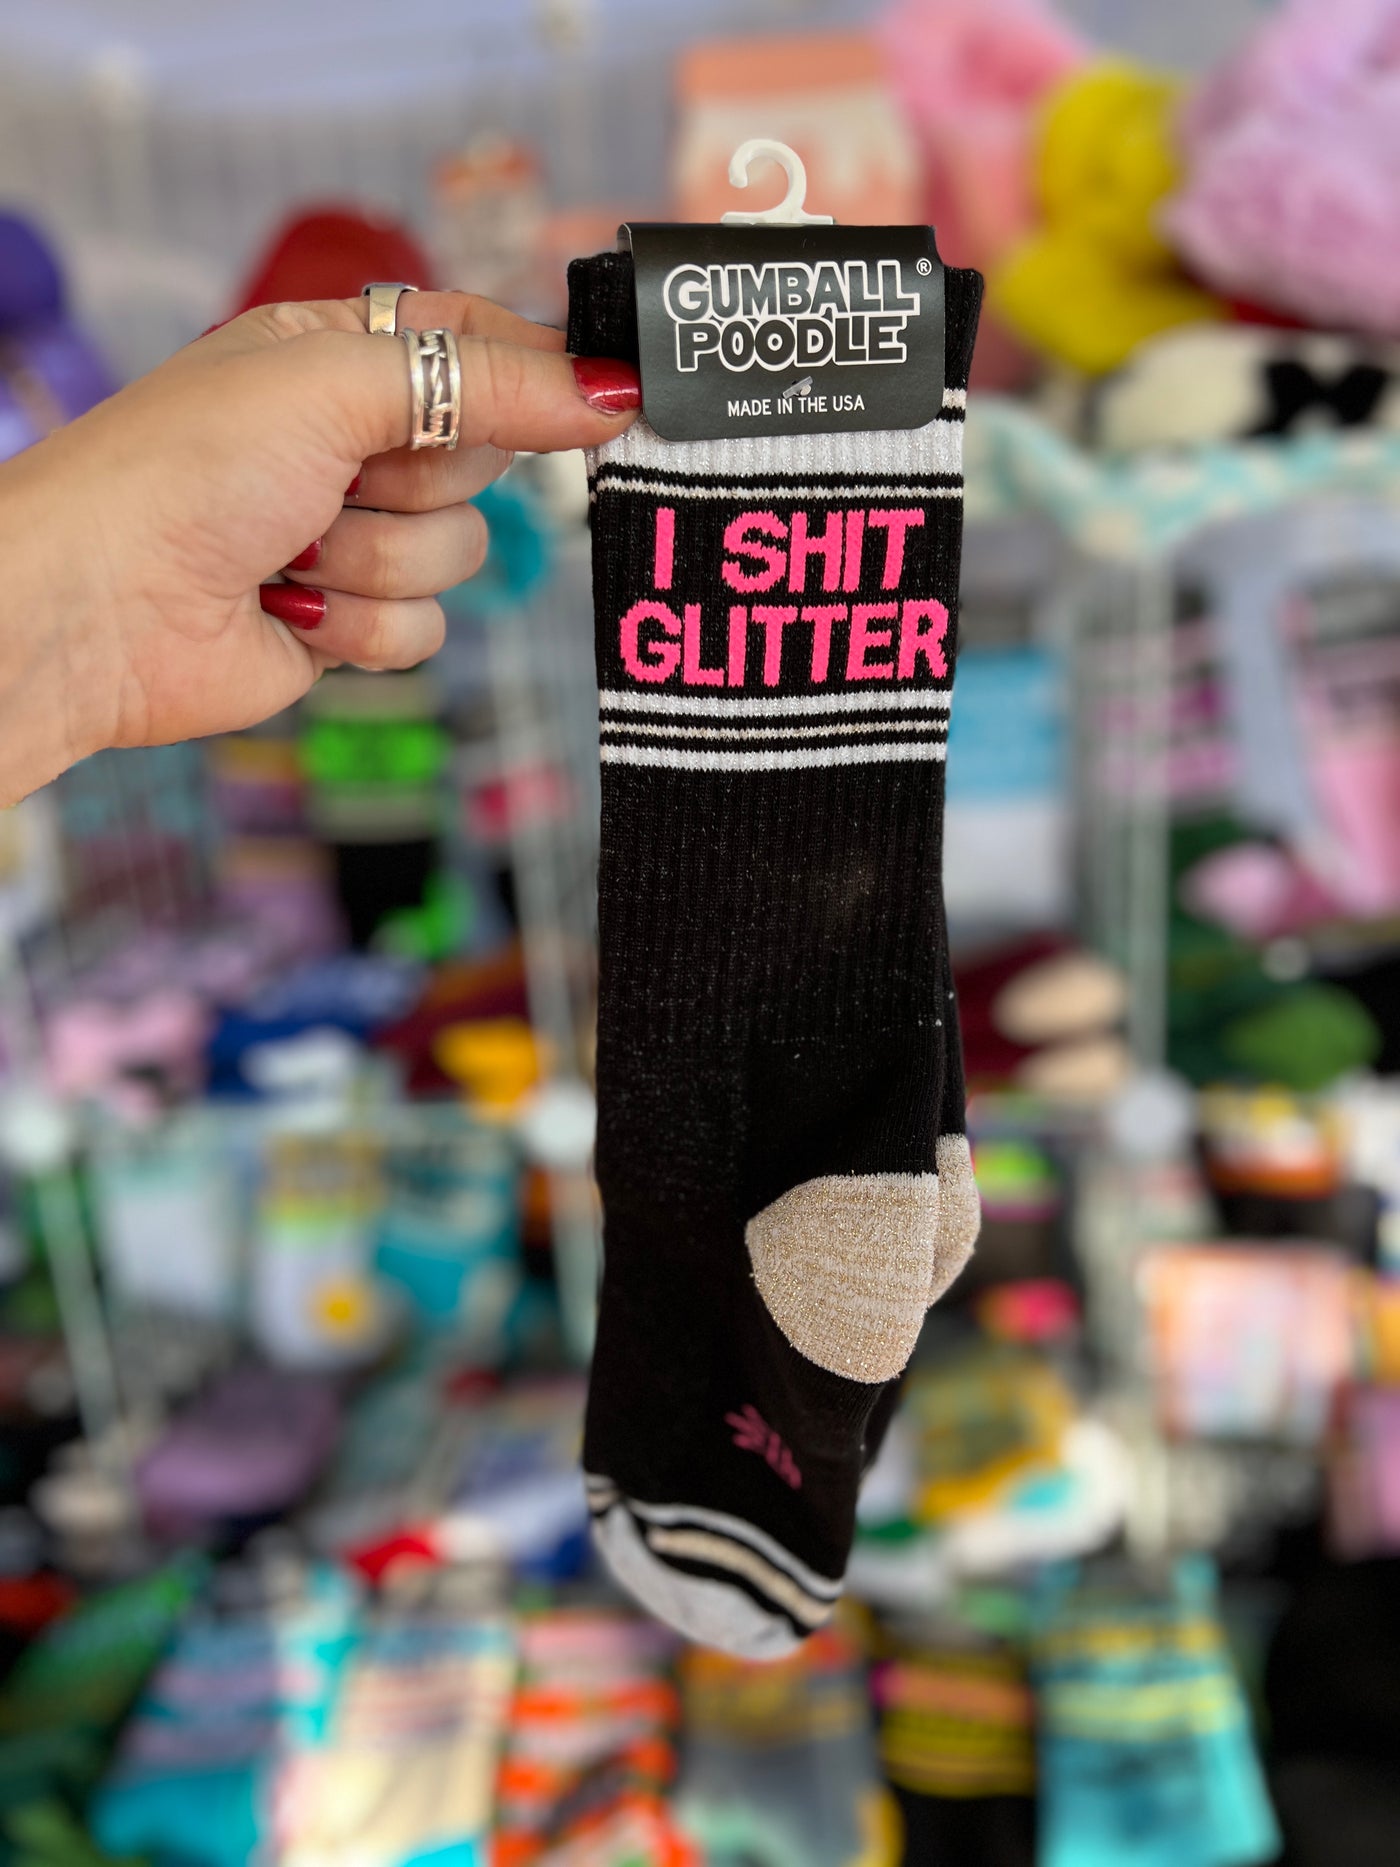 I Shit Glitter gym socks